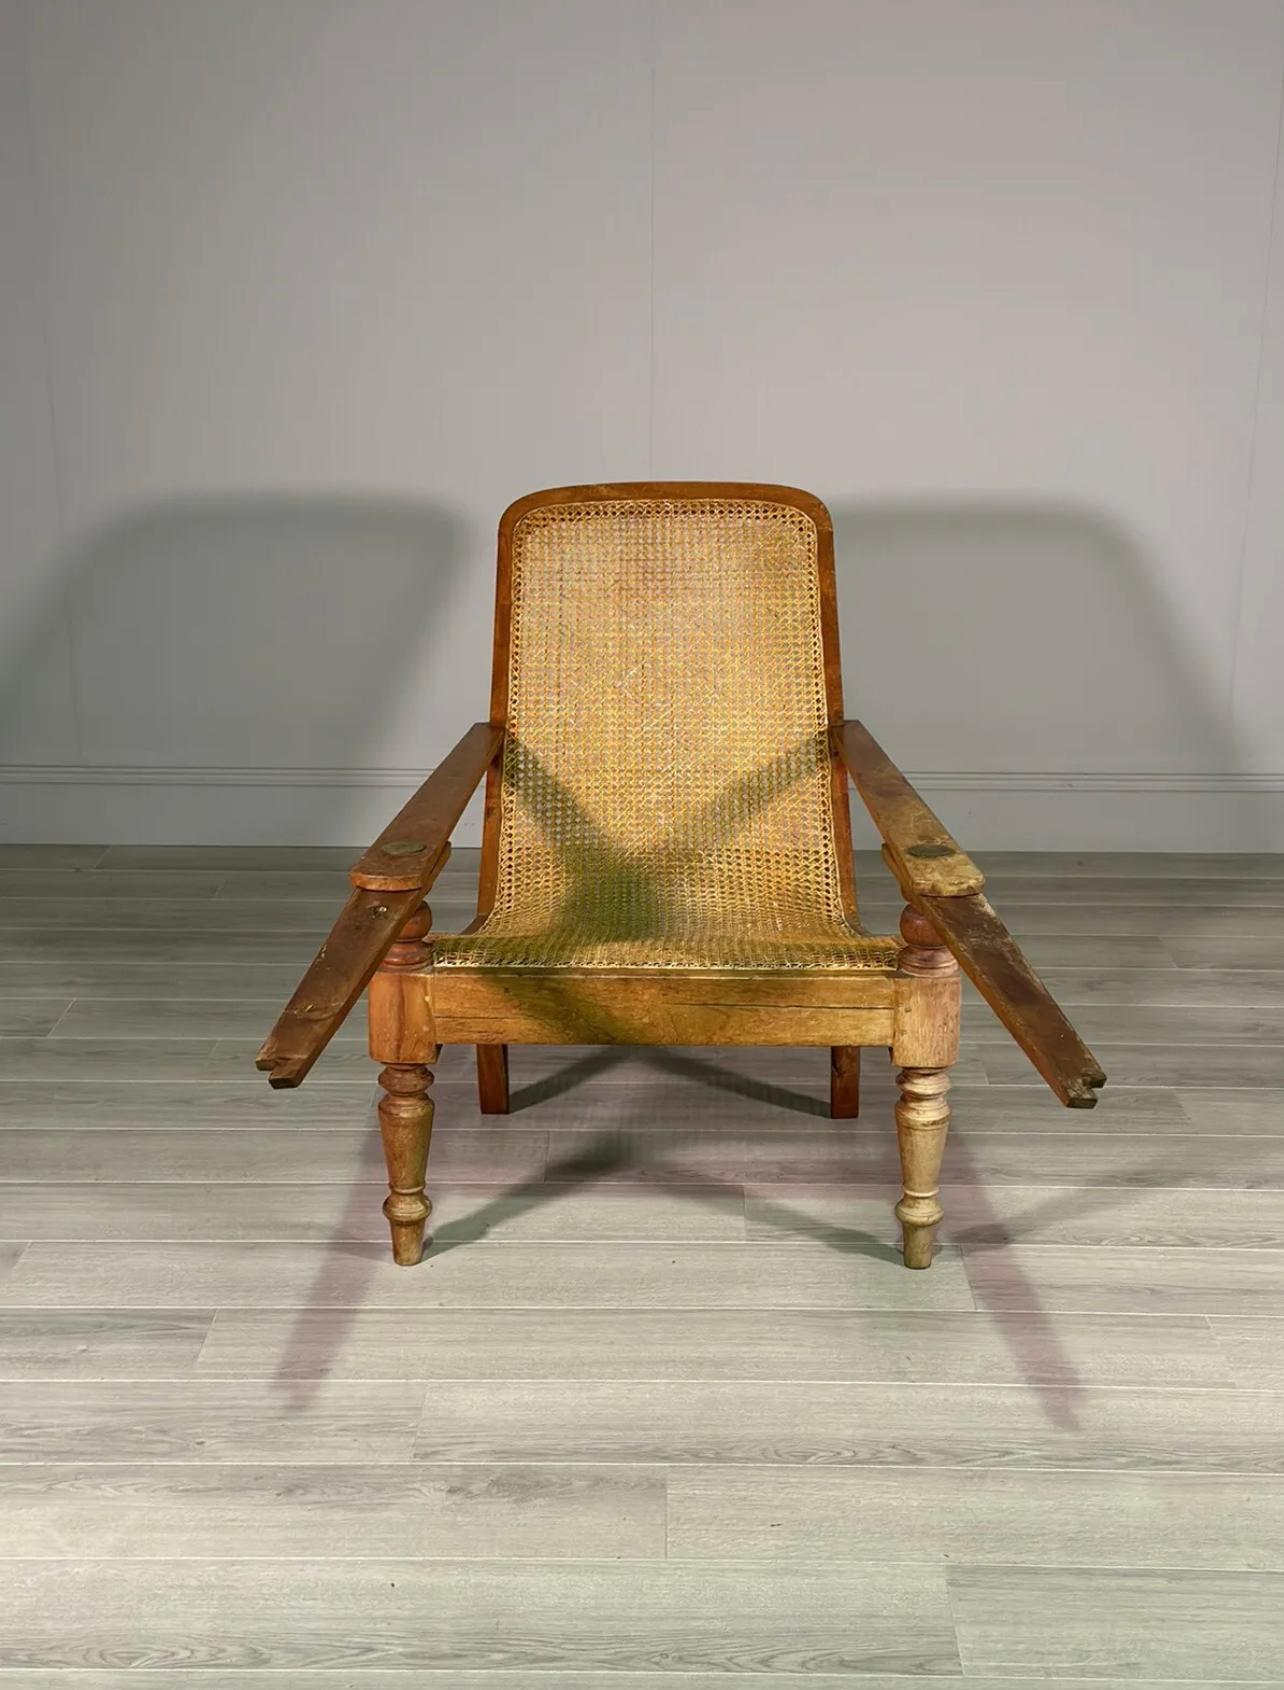 Eine frühe 20. Jahrhundert Plantage Stuhl, ist der Stuhl aus Birkenholz mit einem Rohr Sitz, der eine sehr kleine Reparatur hat gemacht. Der Stuhl ist groß, hat extra lange Beinstützen und ist ein schönes Beispiel in sehr gutem Zustand.

Sitzhöhe -